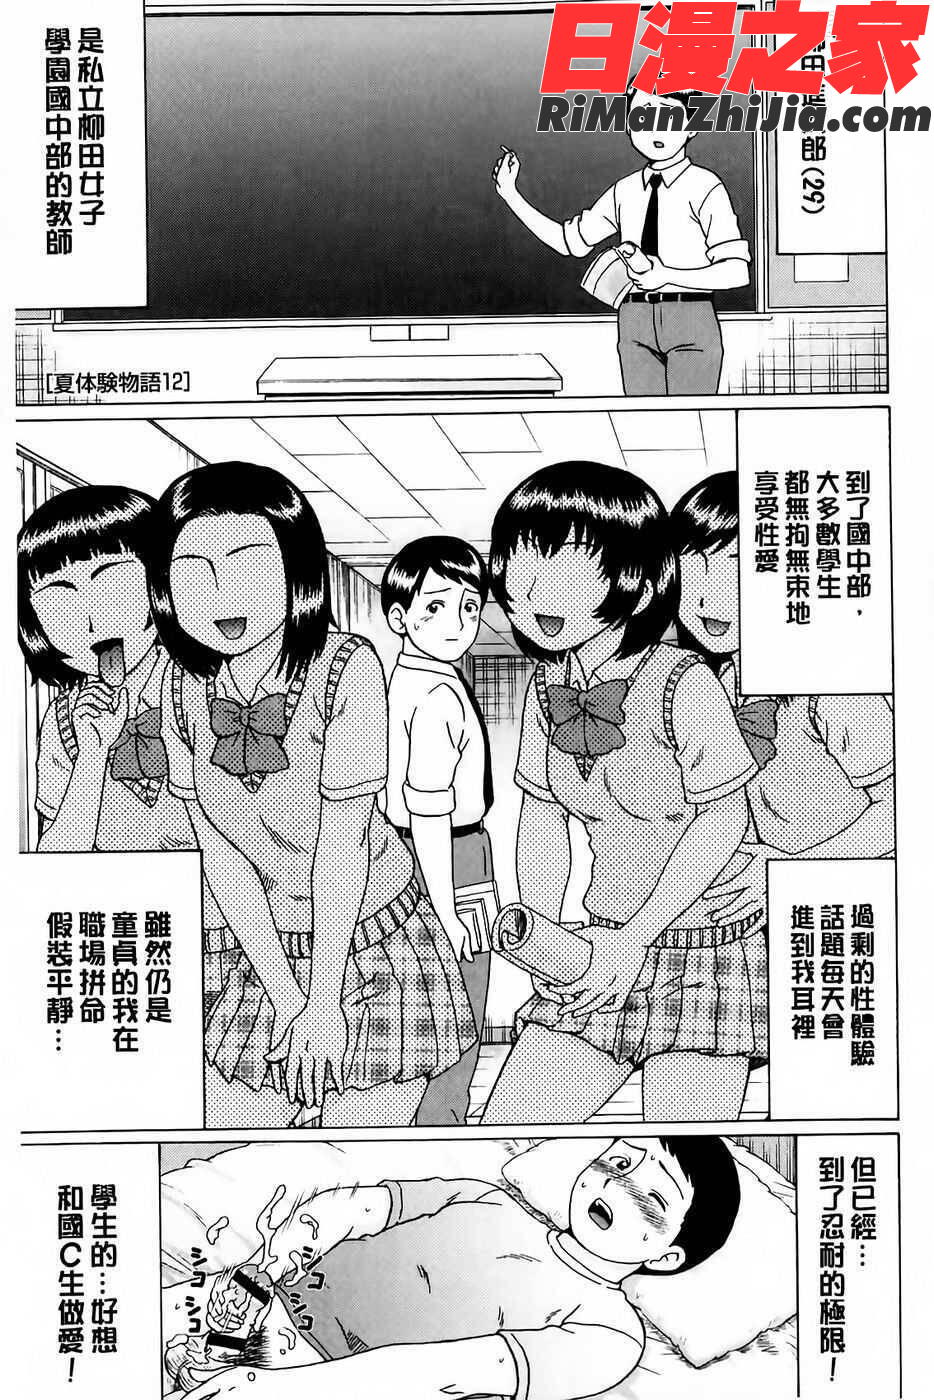 童貞卒業漫画 免费阅读 整部漫画 60.jpg